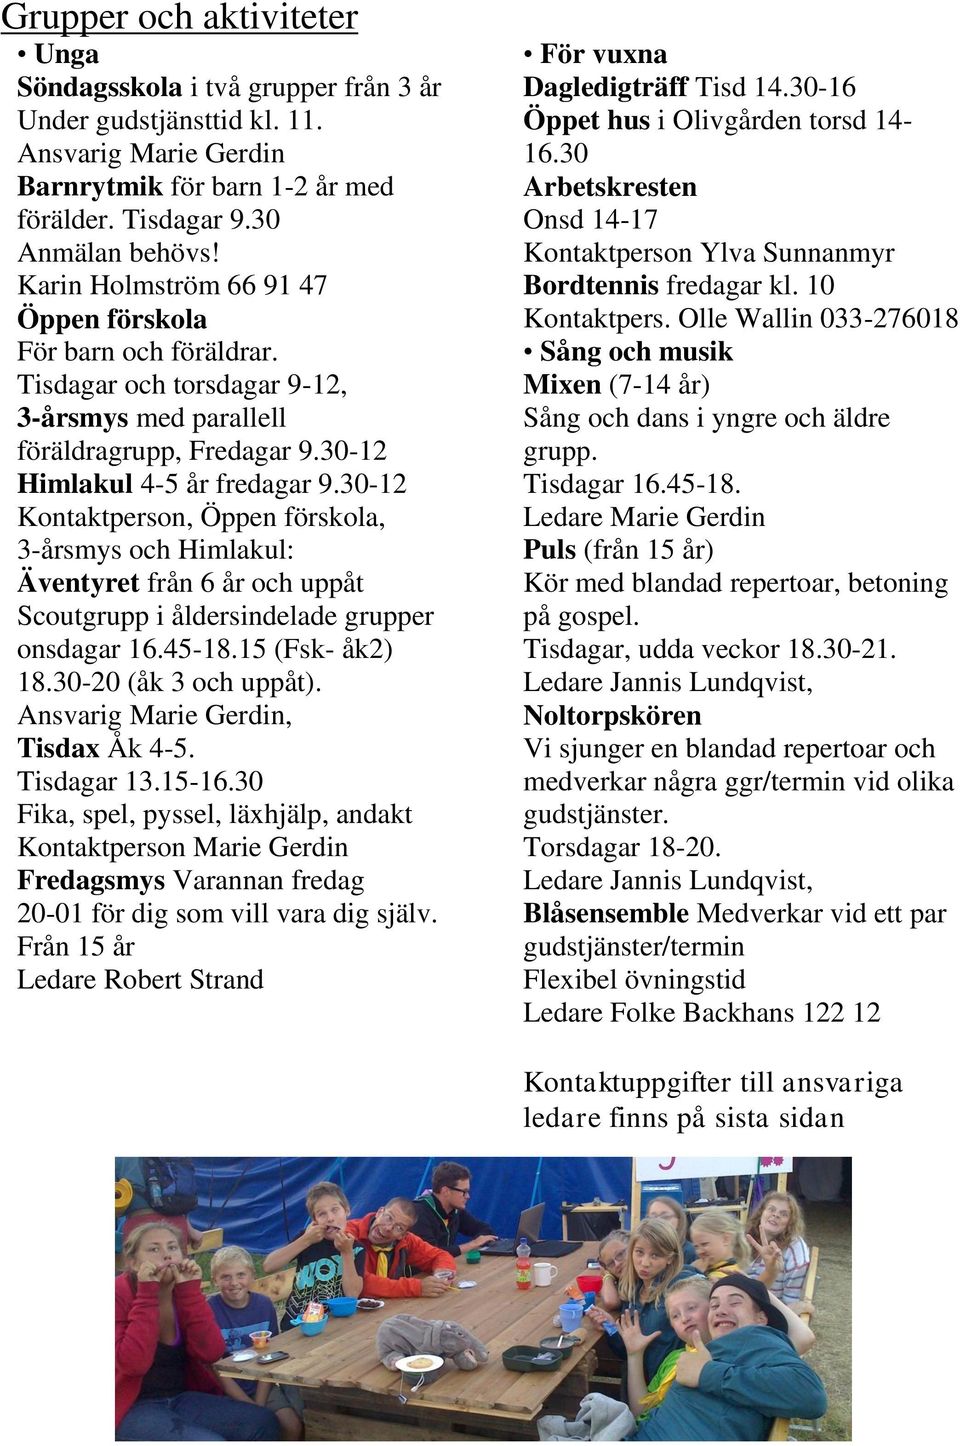 30-12 Kontaktperson, Öppen förskola, 3-årsmys och Himlakul: Äventyret från 6 år och uppåt Scoutgrupp i åldersindelade grupper onsdagar 16.45-18.15 (Fsk- åk2) 18.30-20 (åk 3 och uppåt).